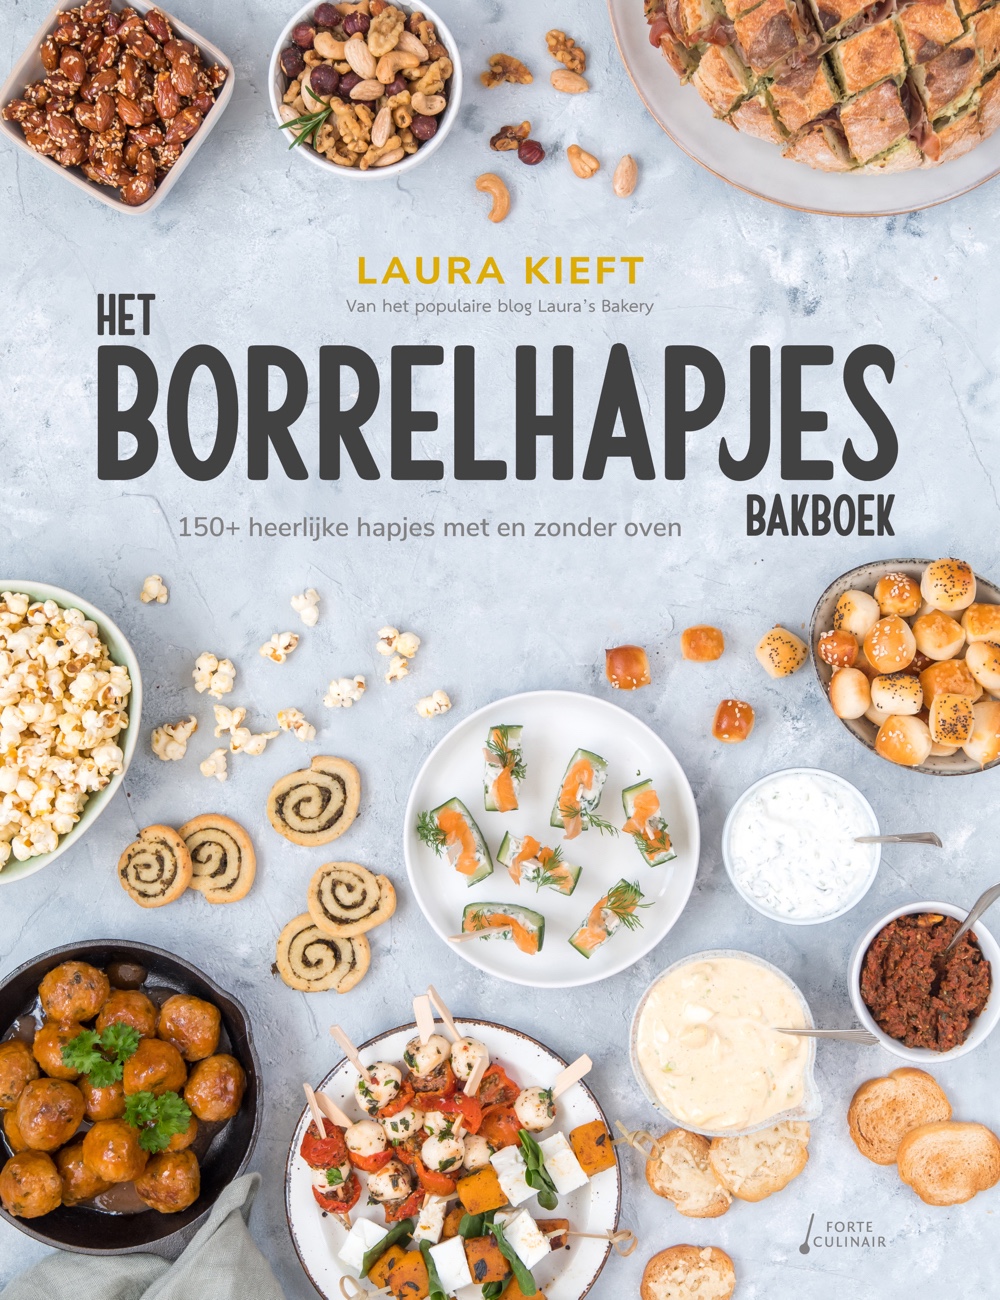 Het Laura's Bakery borrelhapjes bakboek